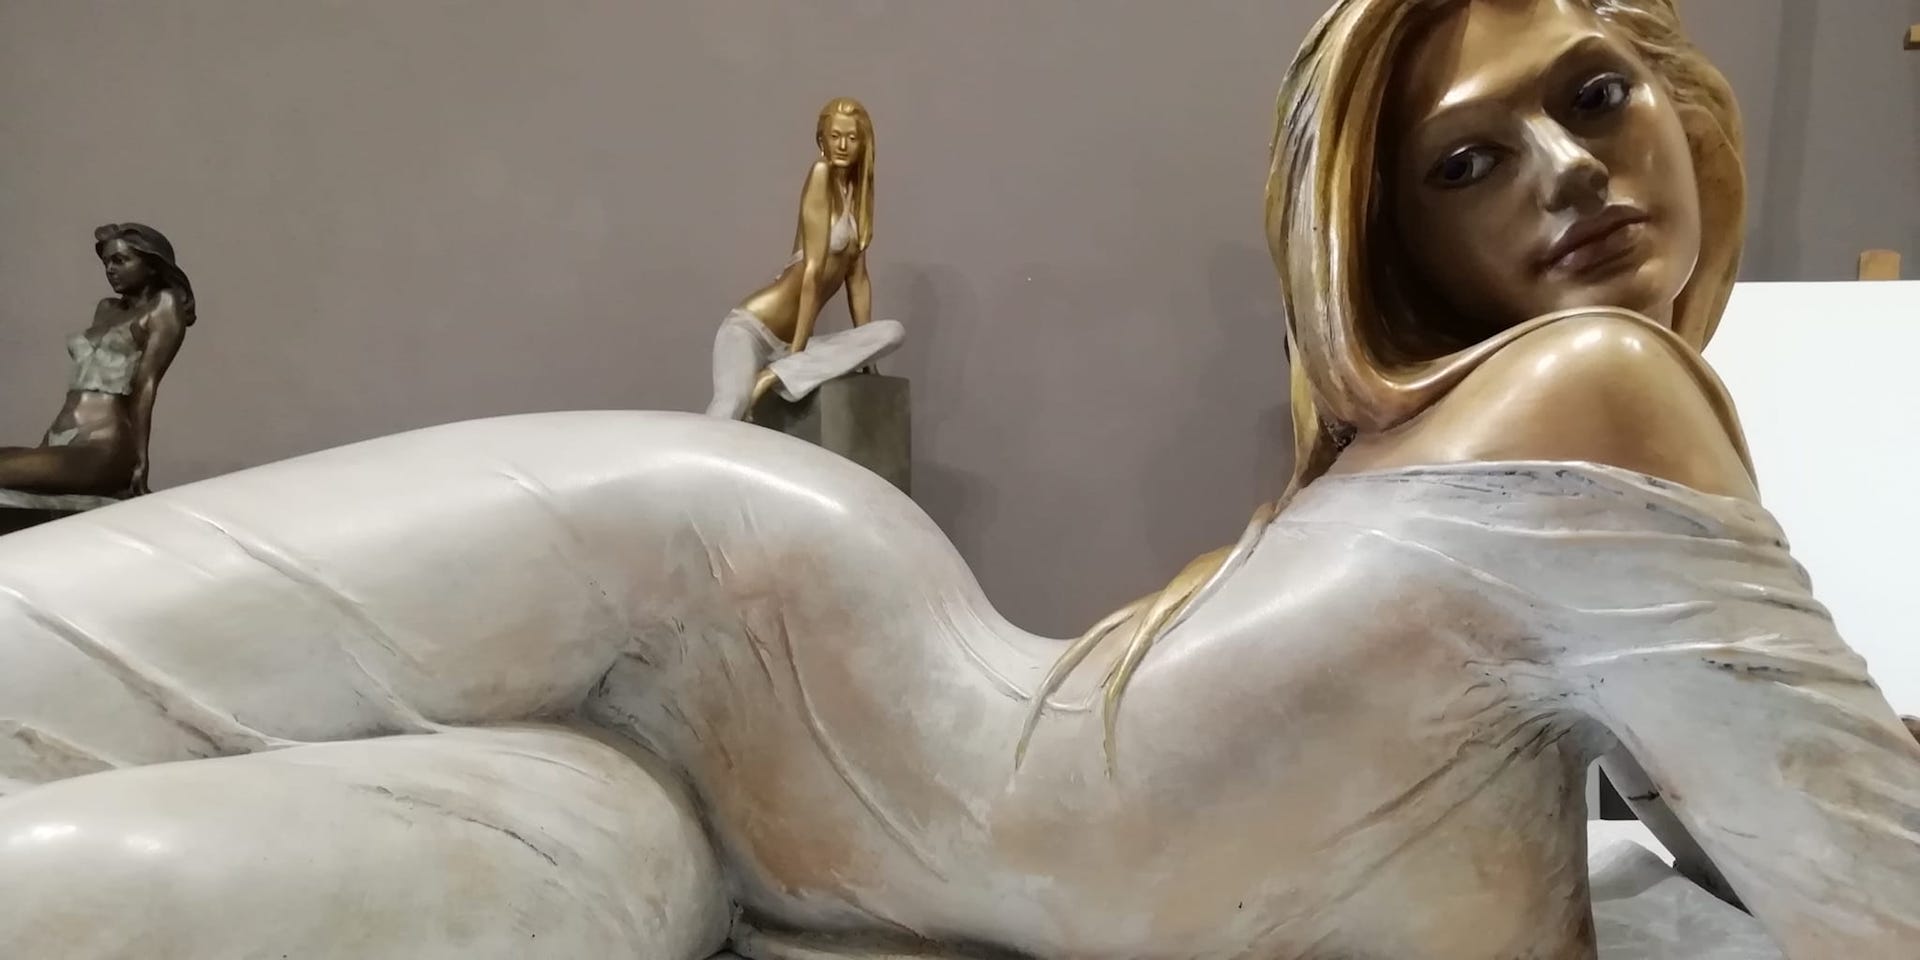 Sculture-bronzo-statue-donne-nudi-femminili-artistici-Eva-velata-orizzontale-3